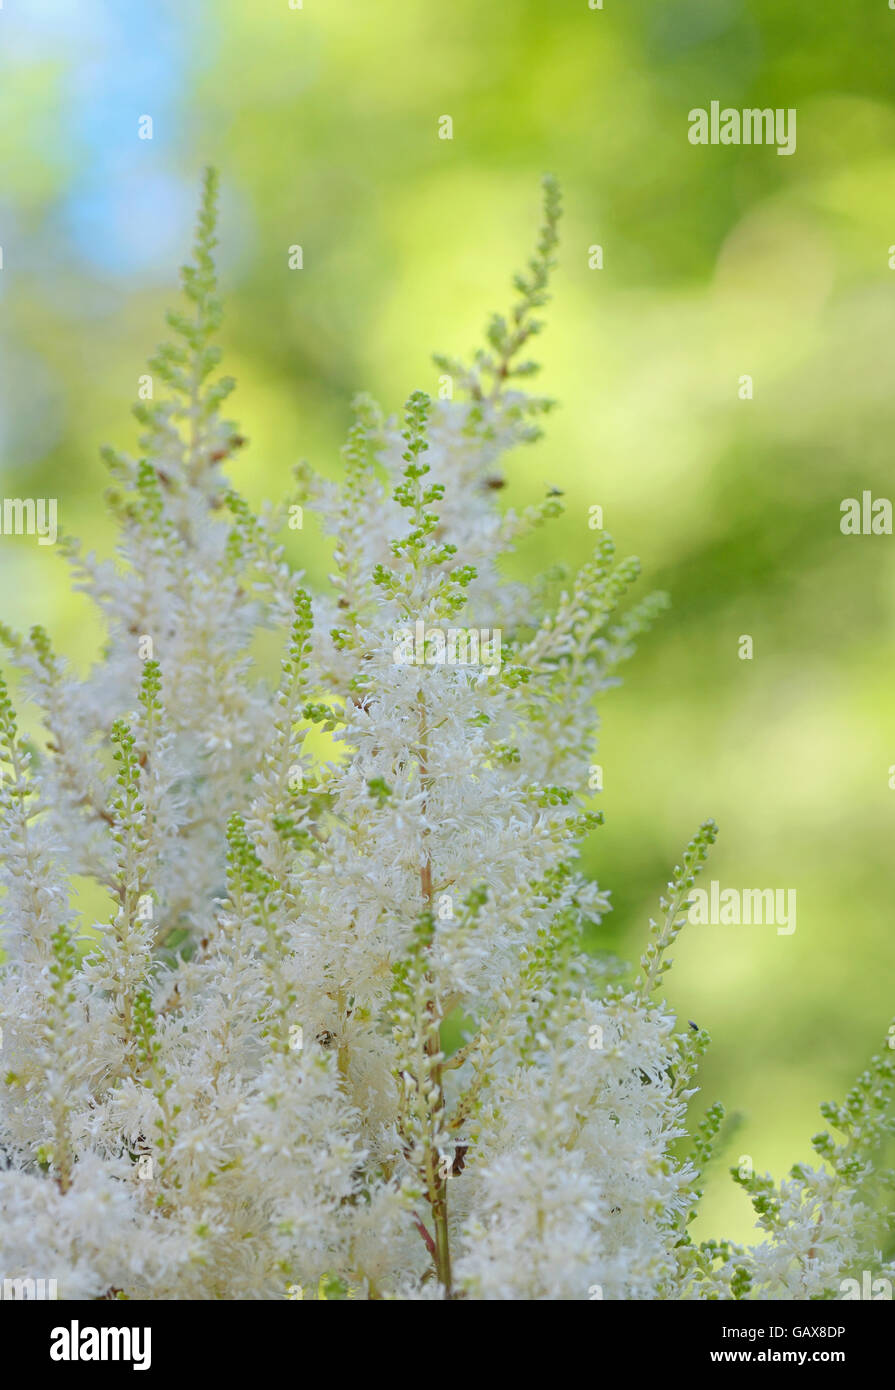 White Astilbe flowers in garden Stock Photo